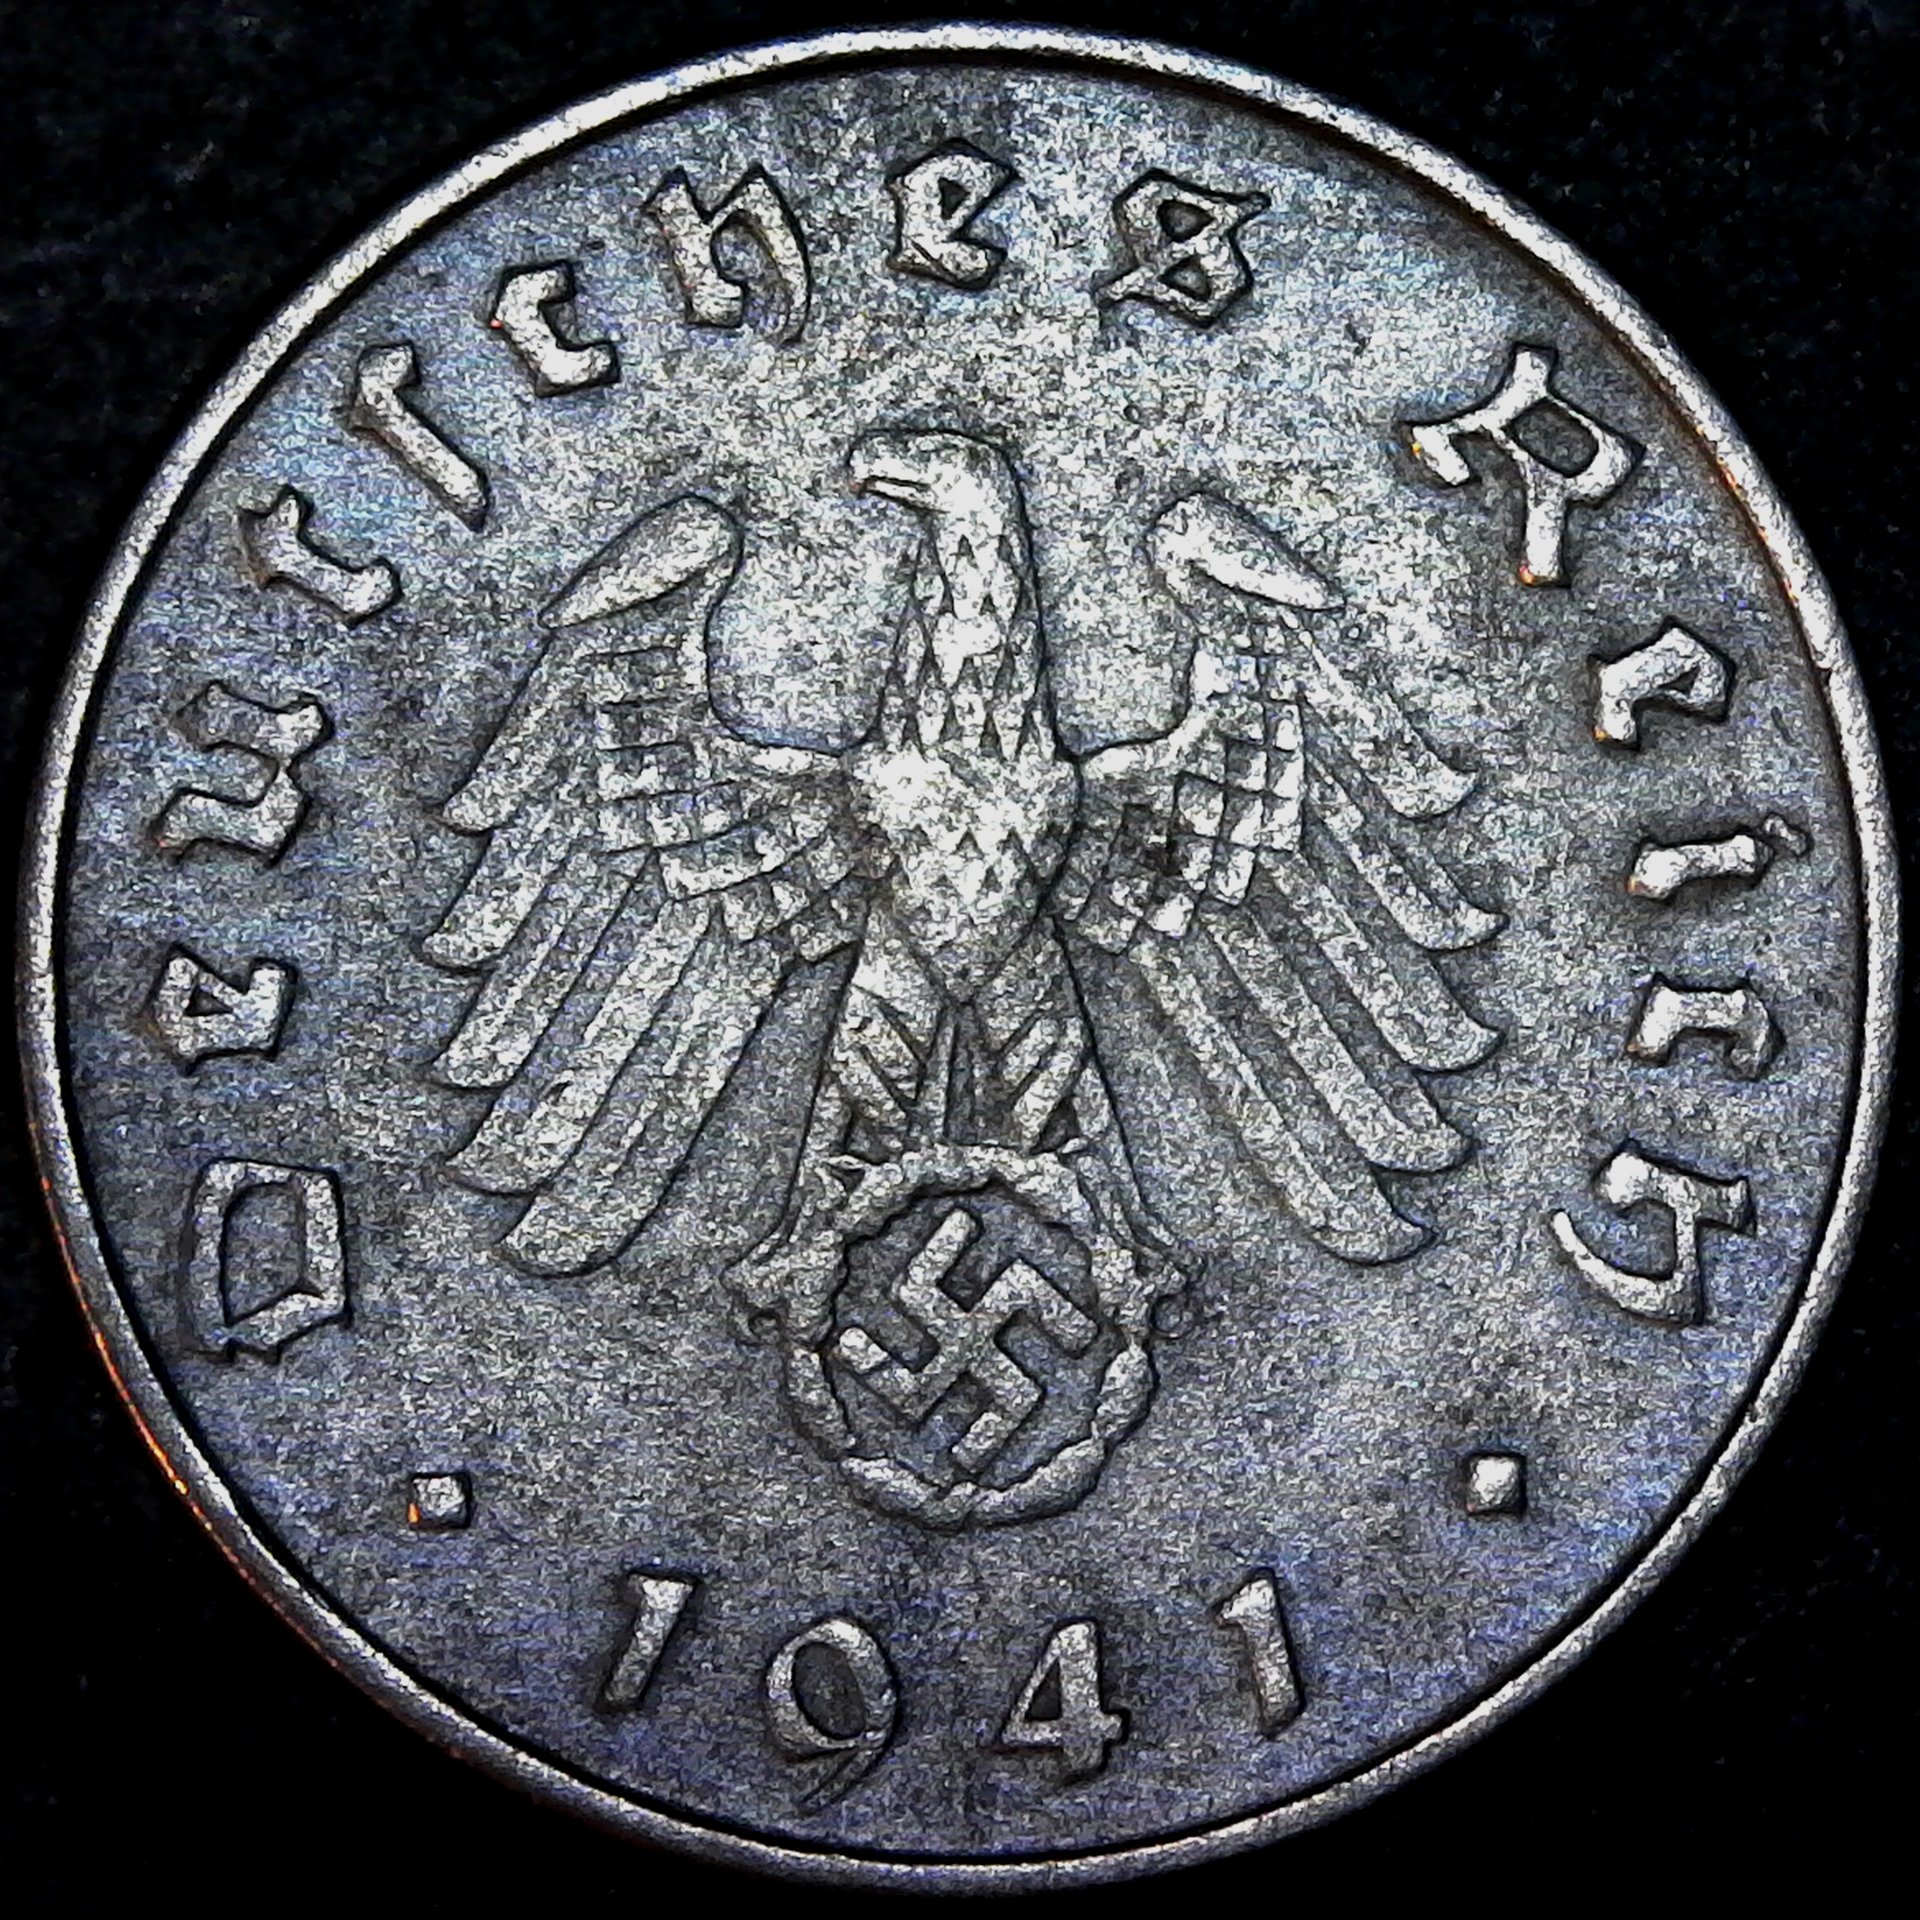 Germany 10 reichspfennig 1941 obverse.jpg